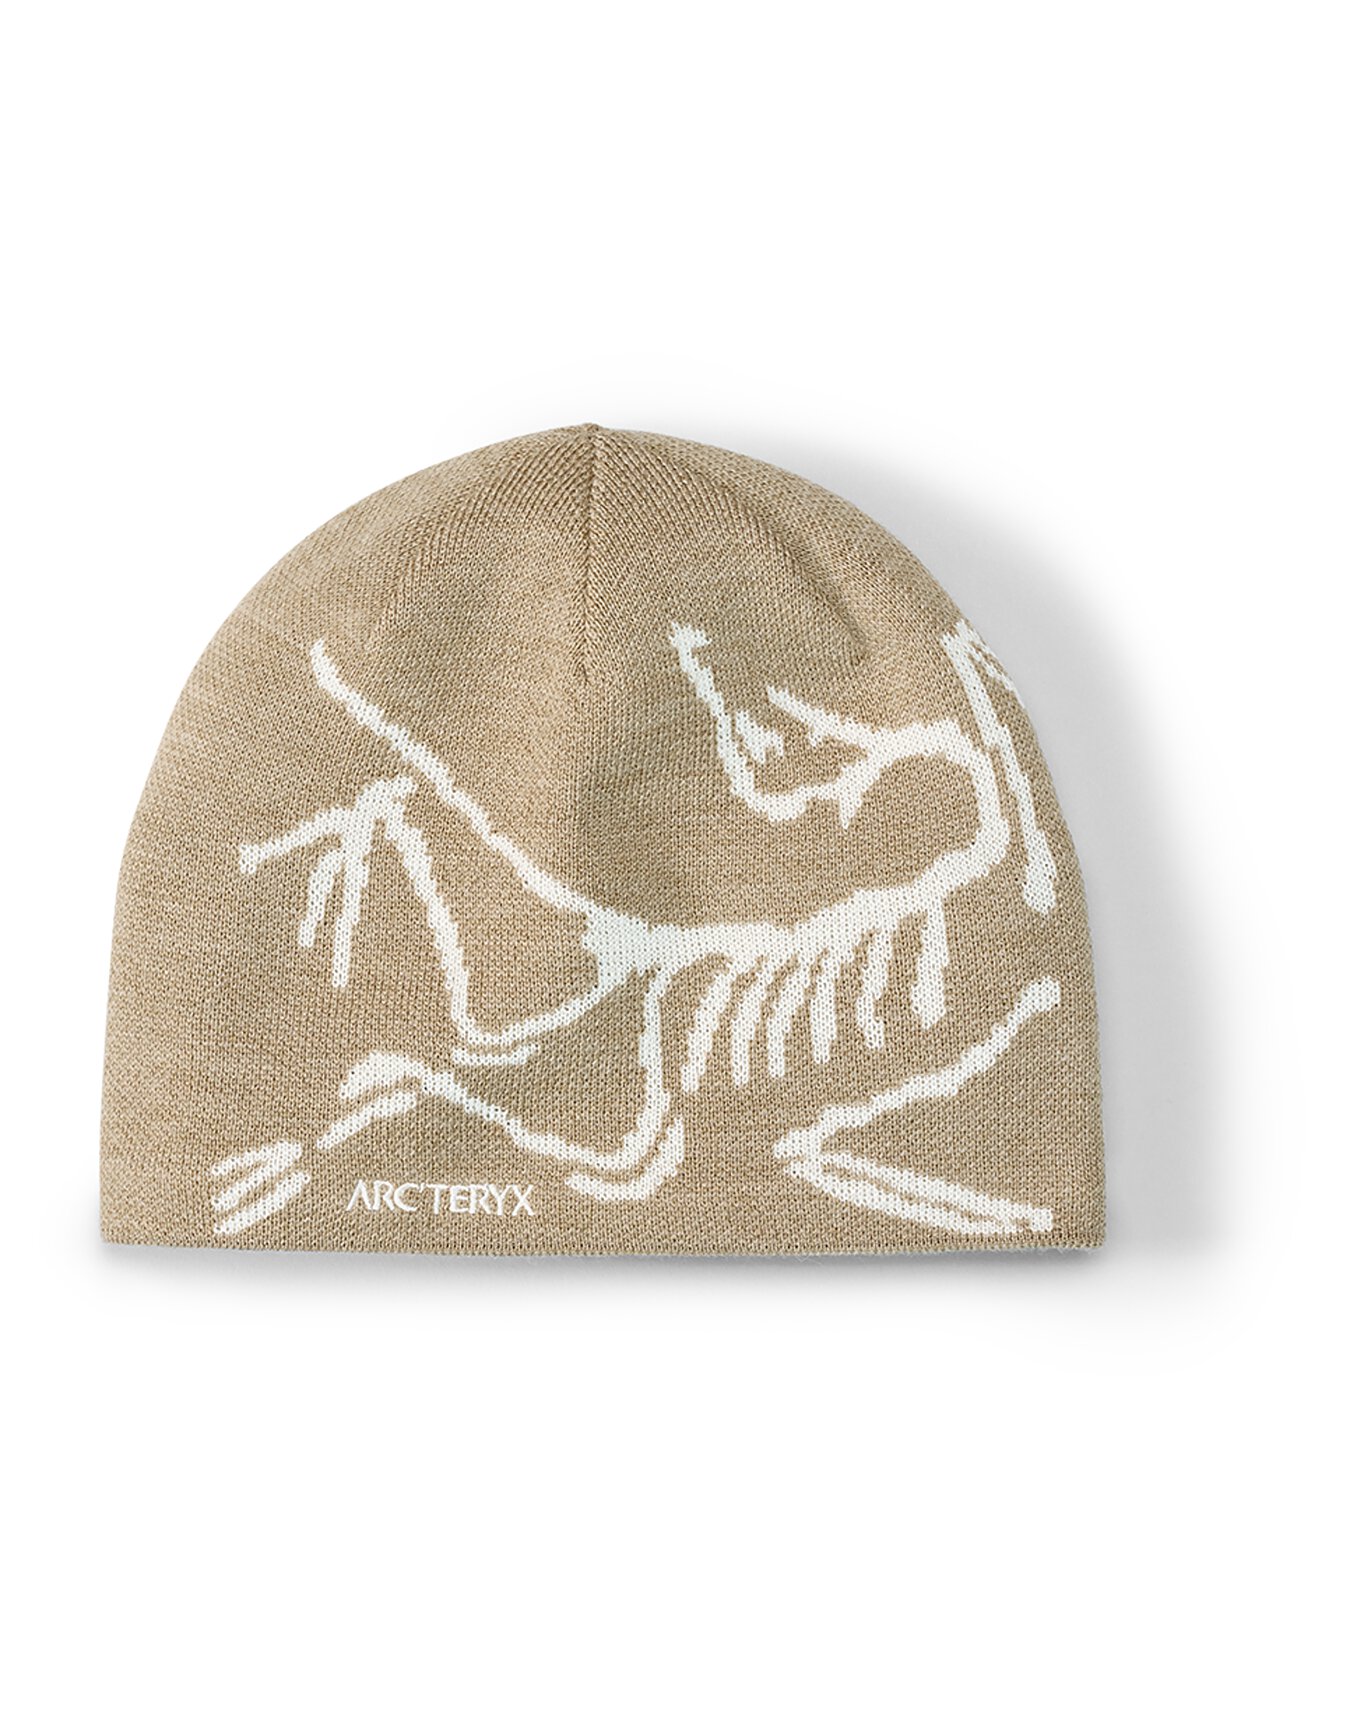 Bird Head无边帽| Arc'teryx